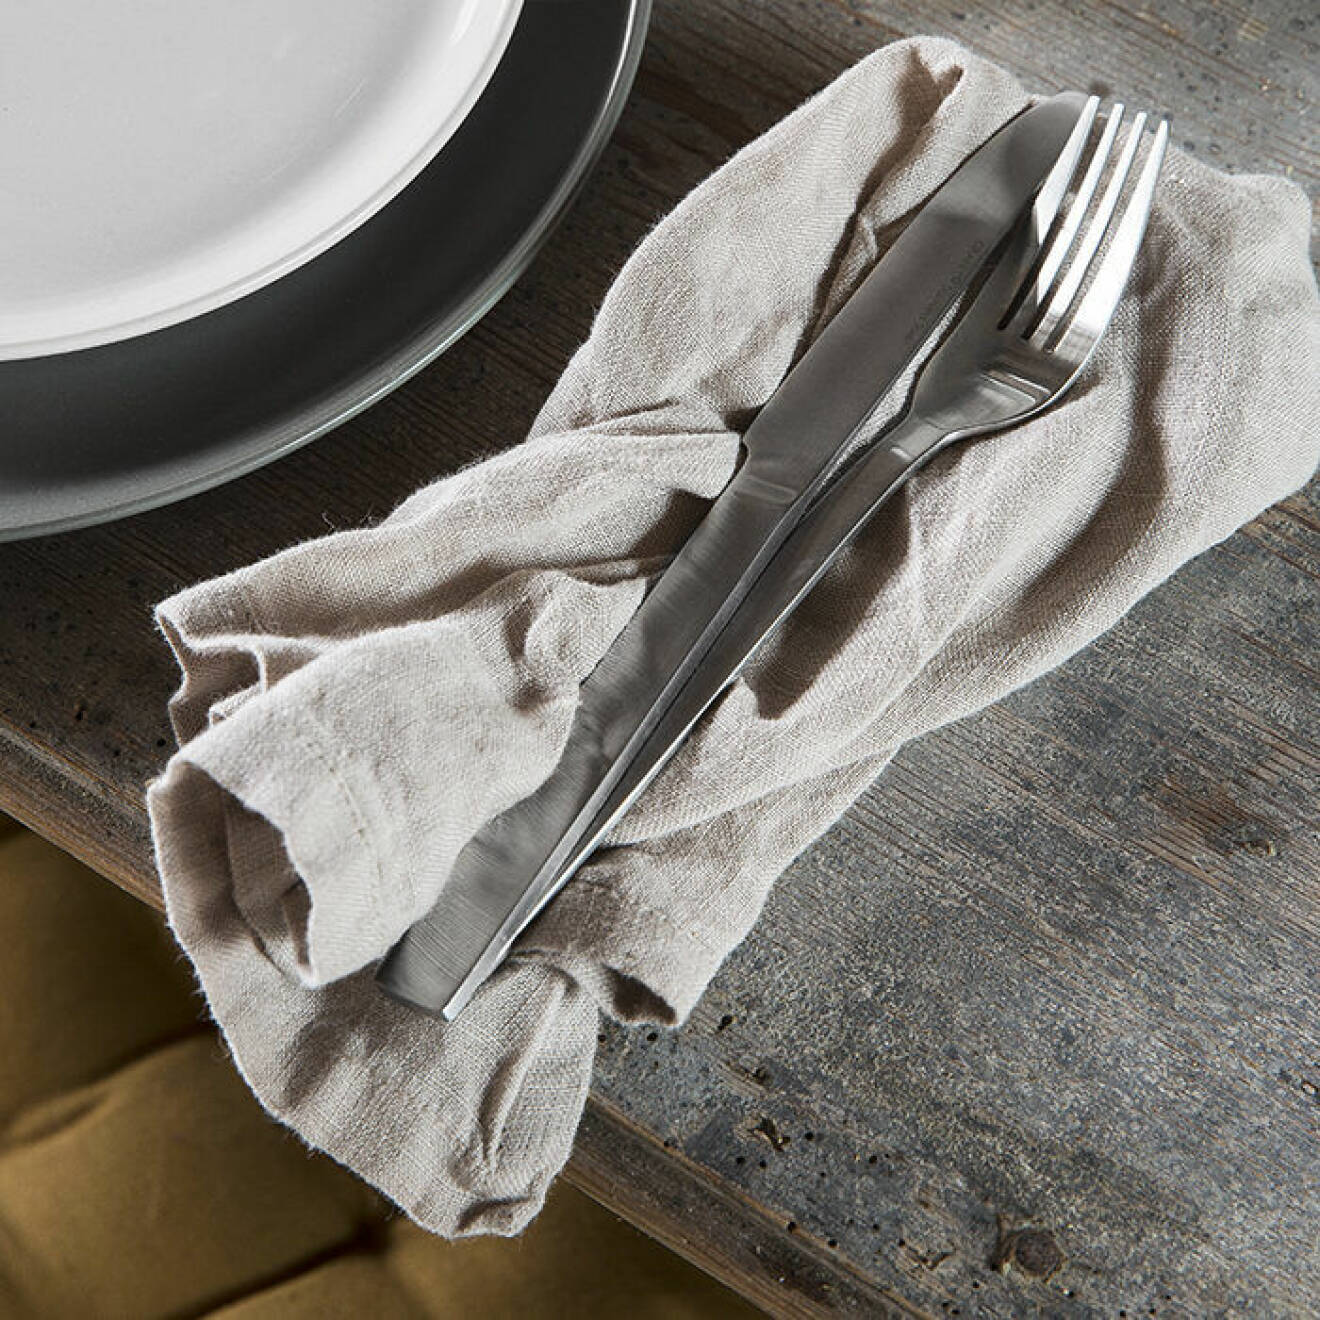 Detaljer i linne i köket ger en somrig känsla